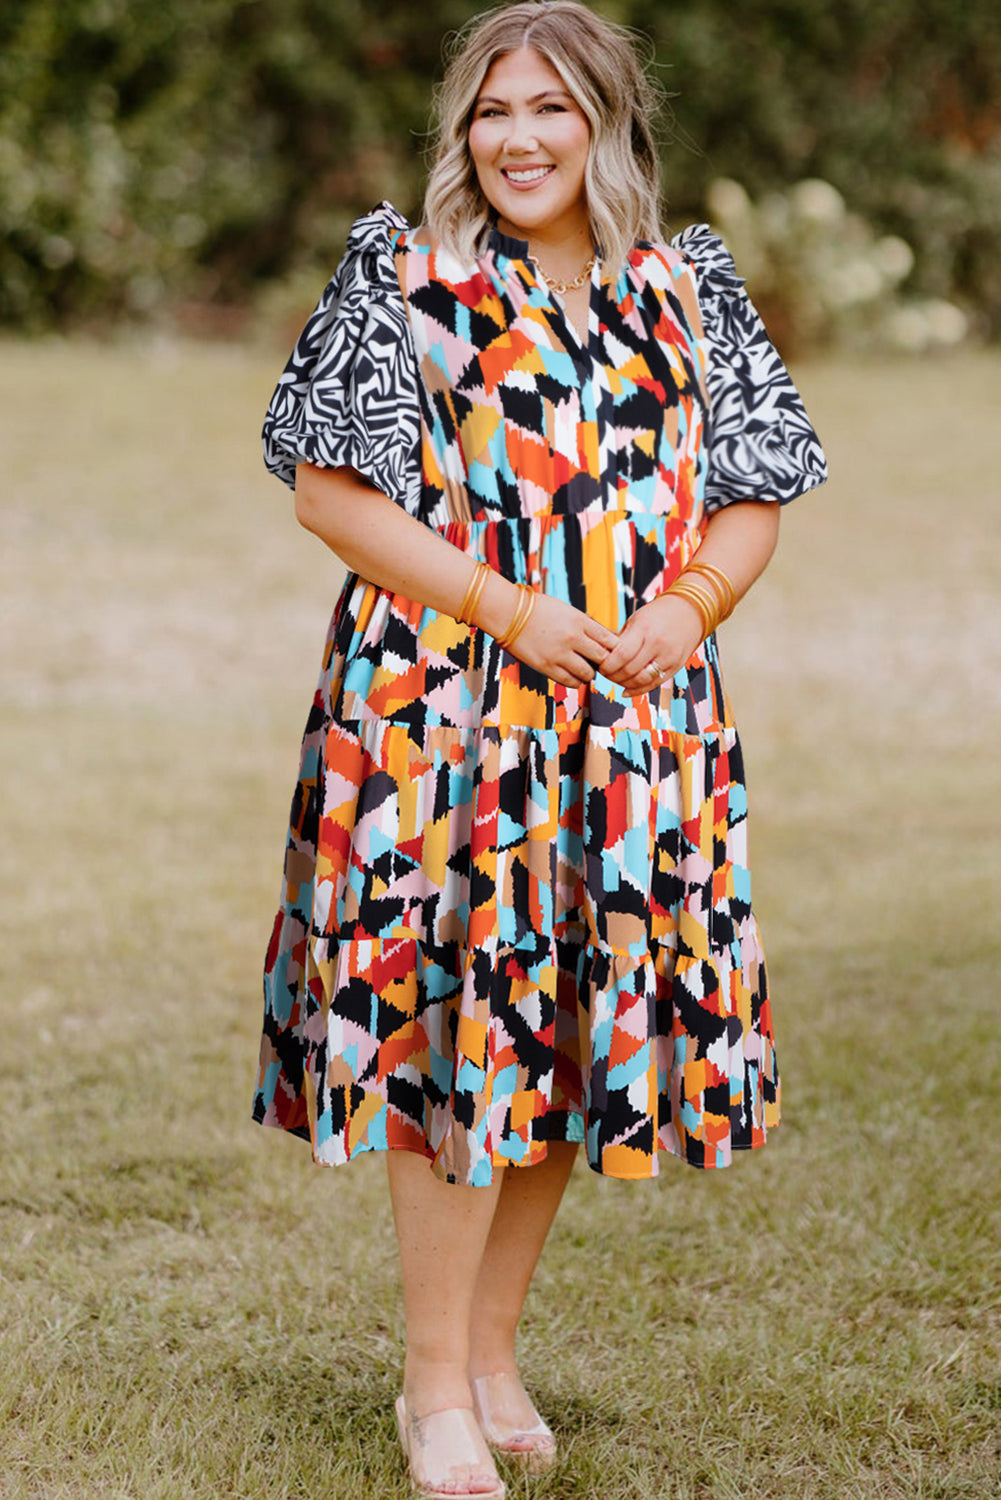 Rosafarbenes, gestuftes Plus-Size-Kleid mit Puffärmeln und abstraktem Print